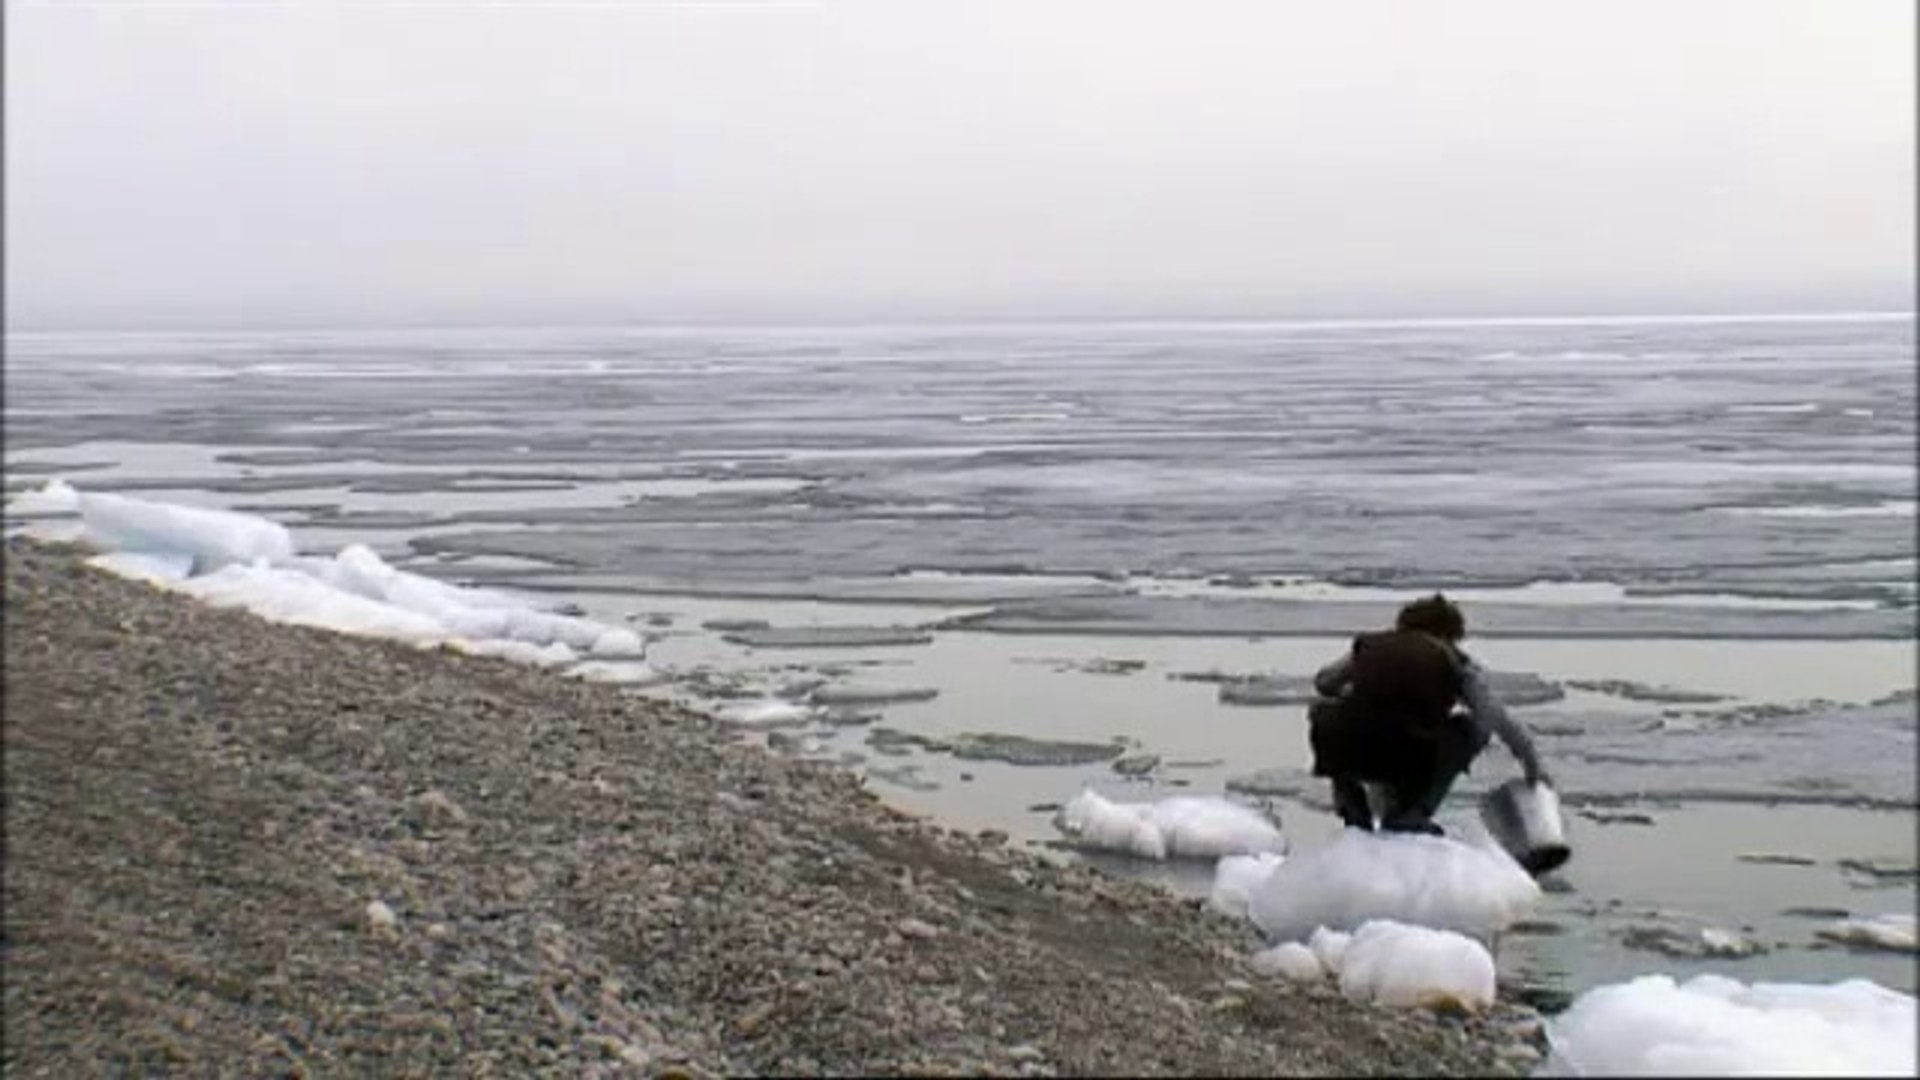 Dans les Forêts de Sibérie : le film de Sylvain Tesson - Vidéo